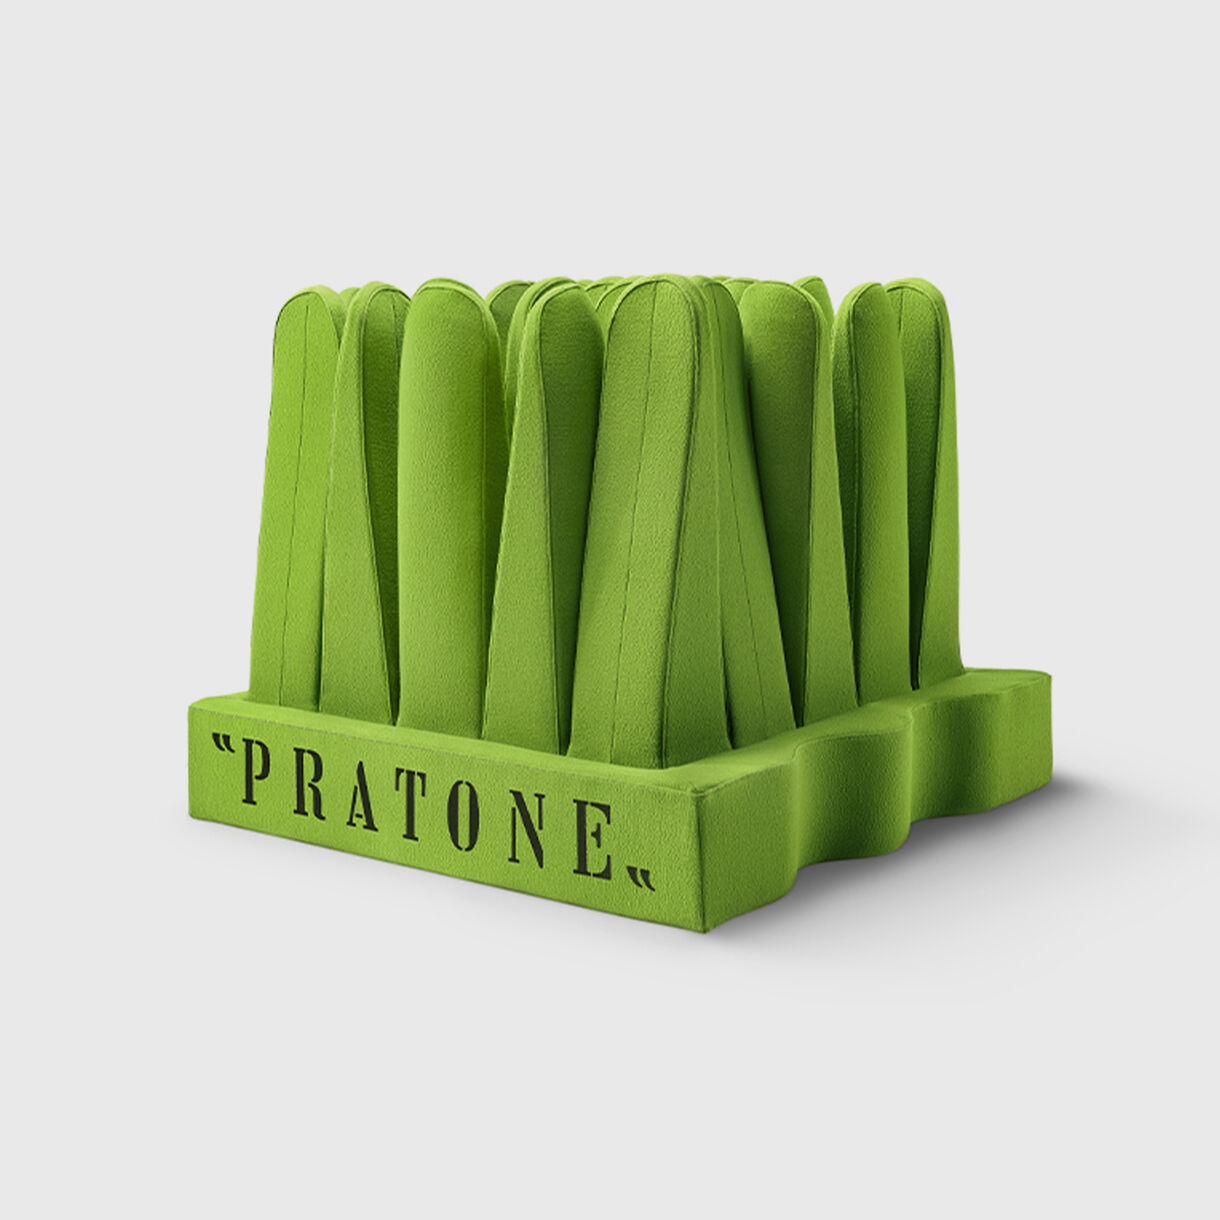 Pratone Forever, Green (Apple)